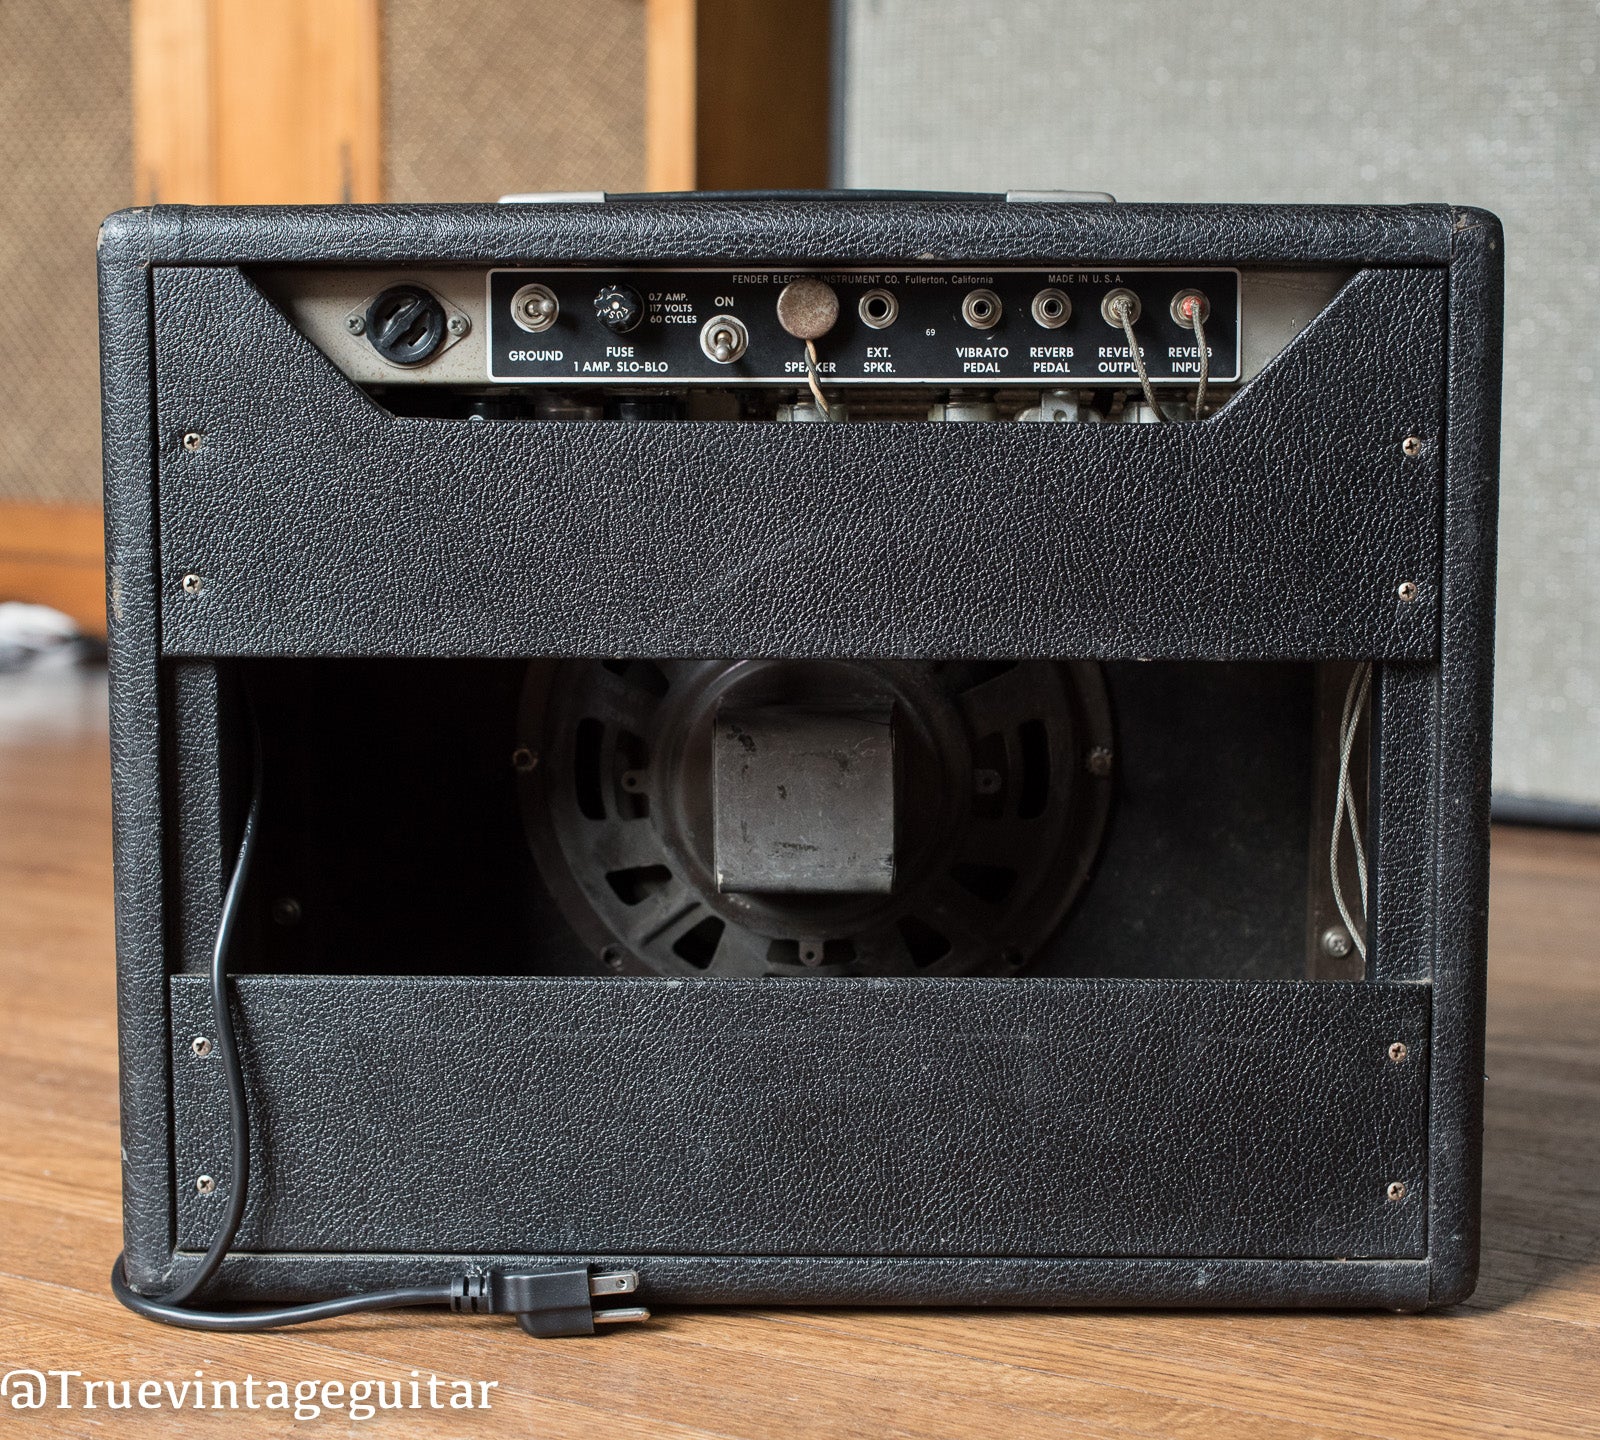 Vintage 1965 Fender Princeton Reverb Amp Amplifier